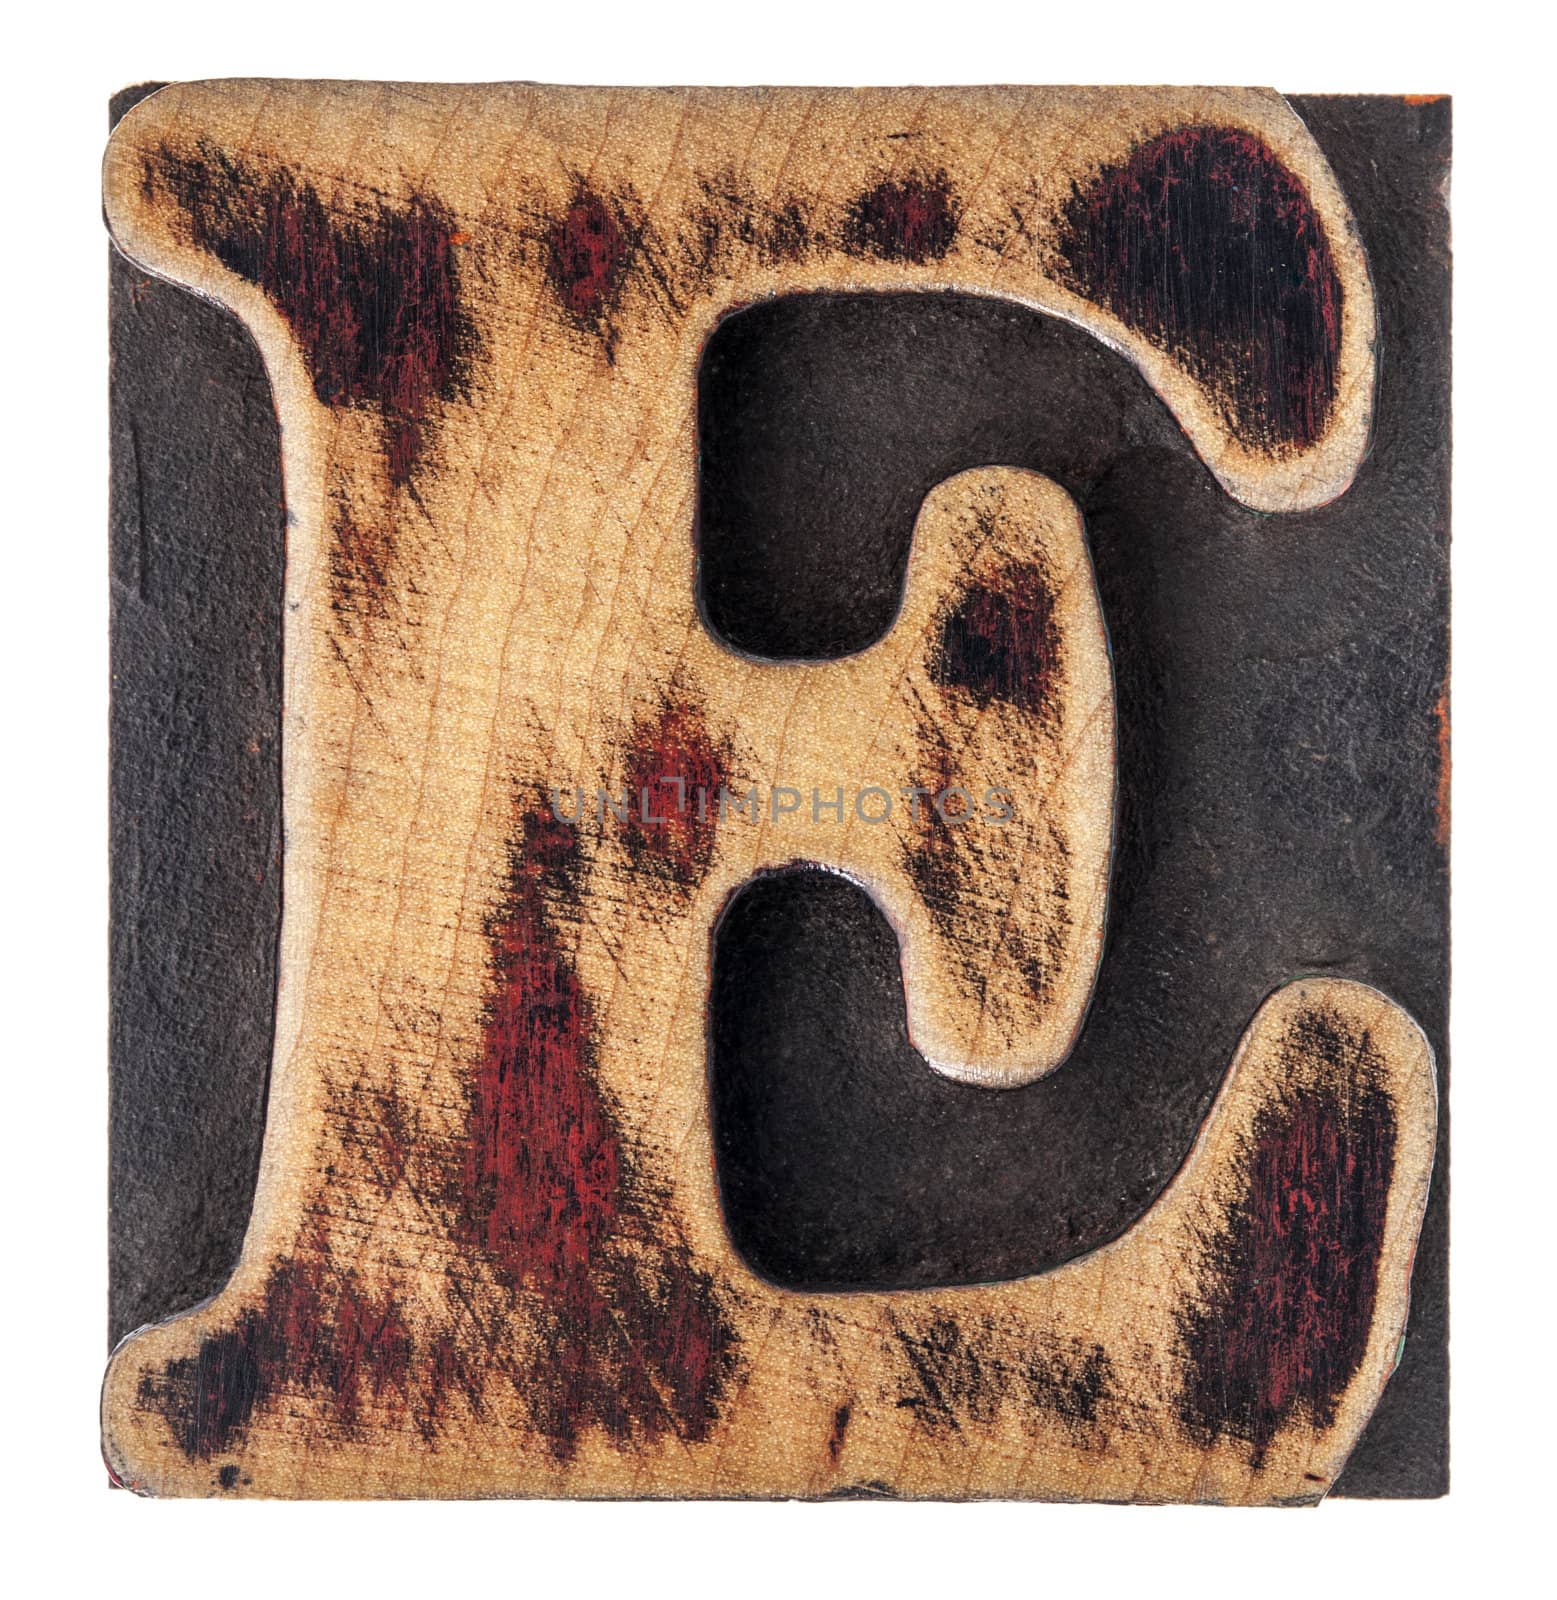 letter E wood type block by PixelsAway